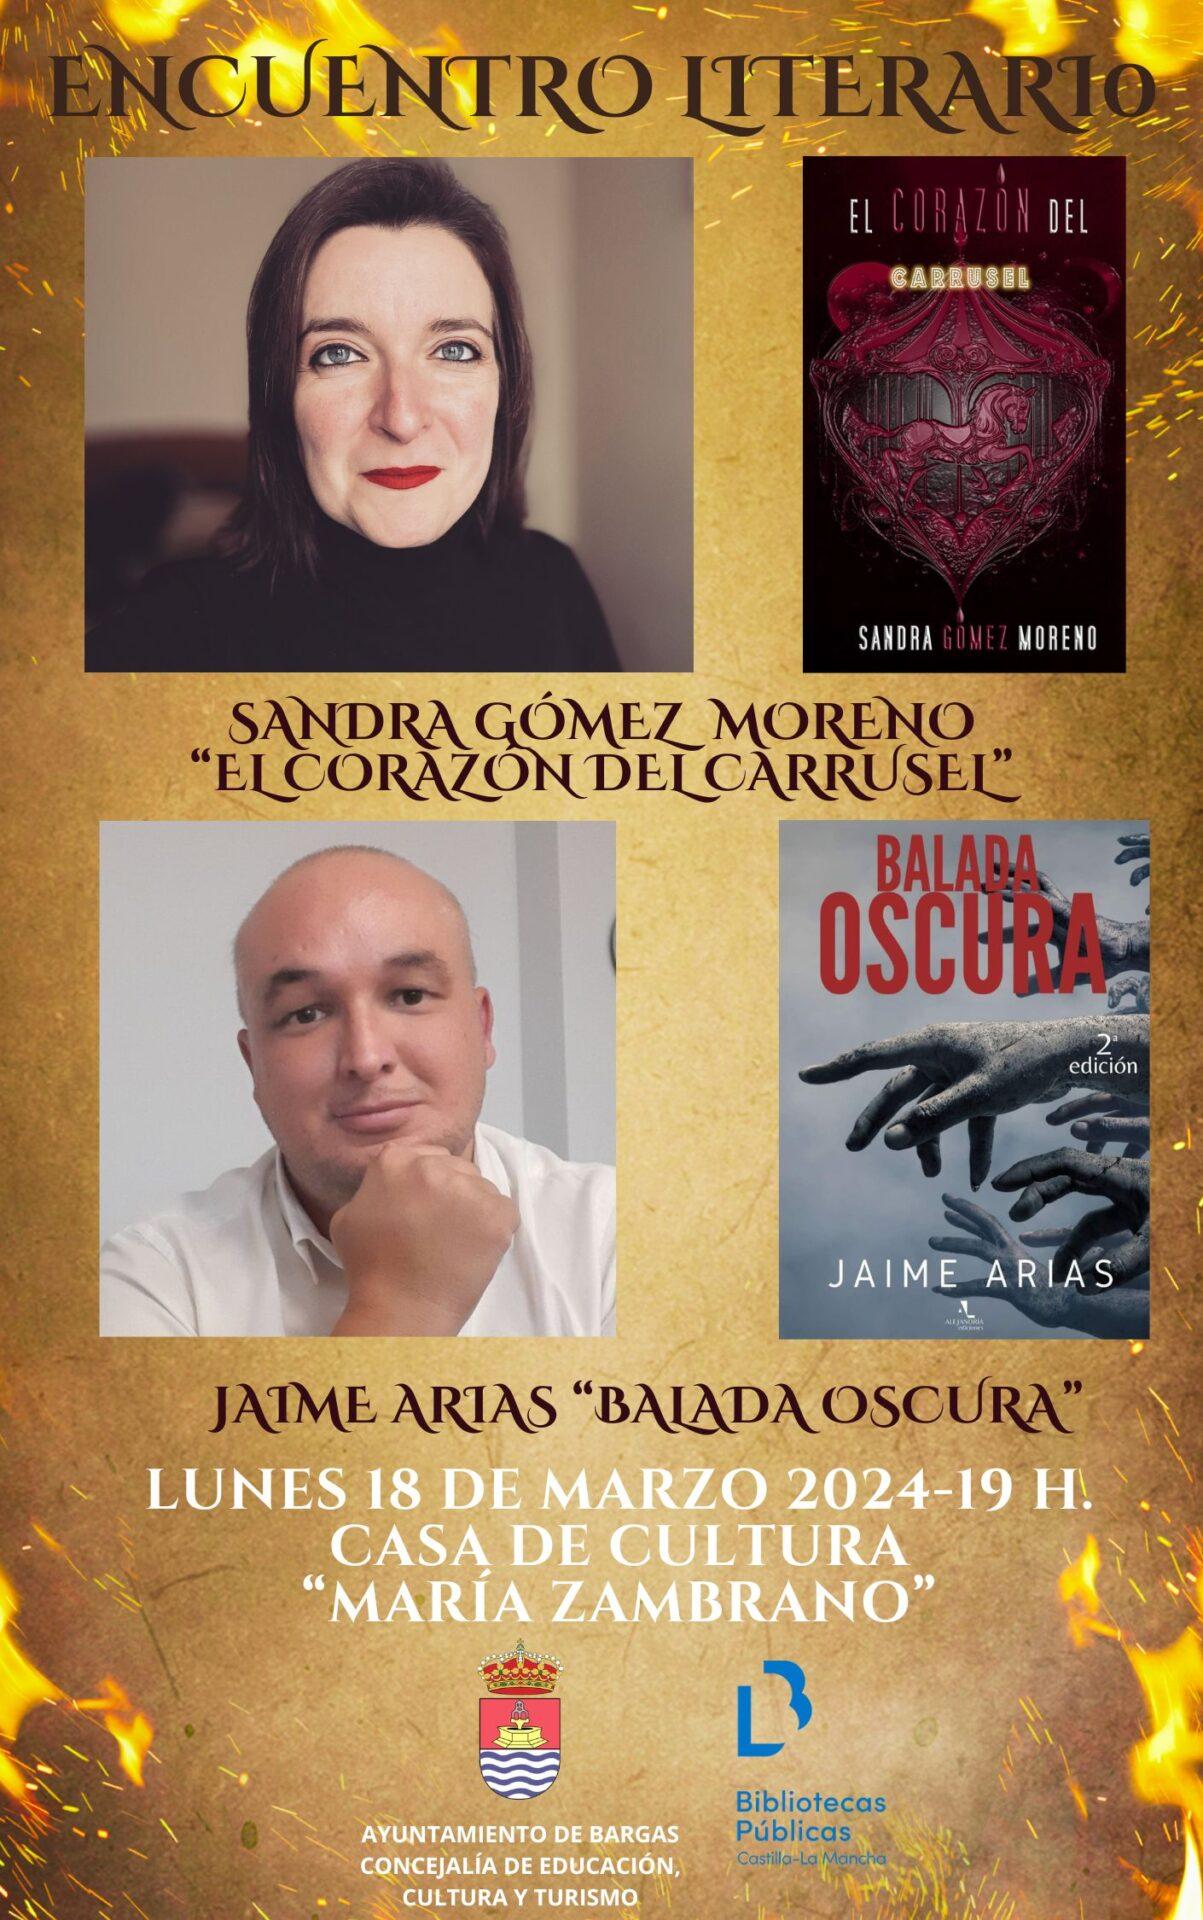 Encuentro literario con Sandra Gómez Moreno y Jaime Arias